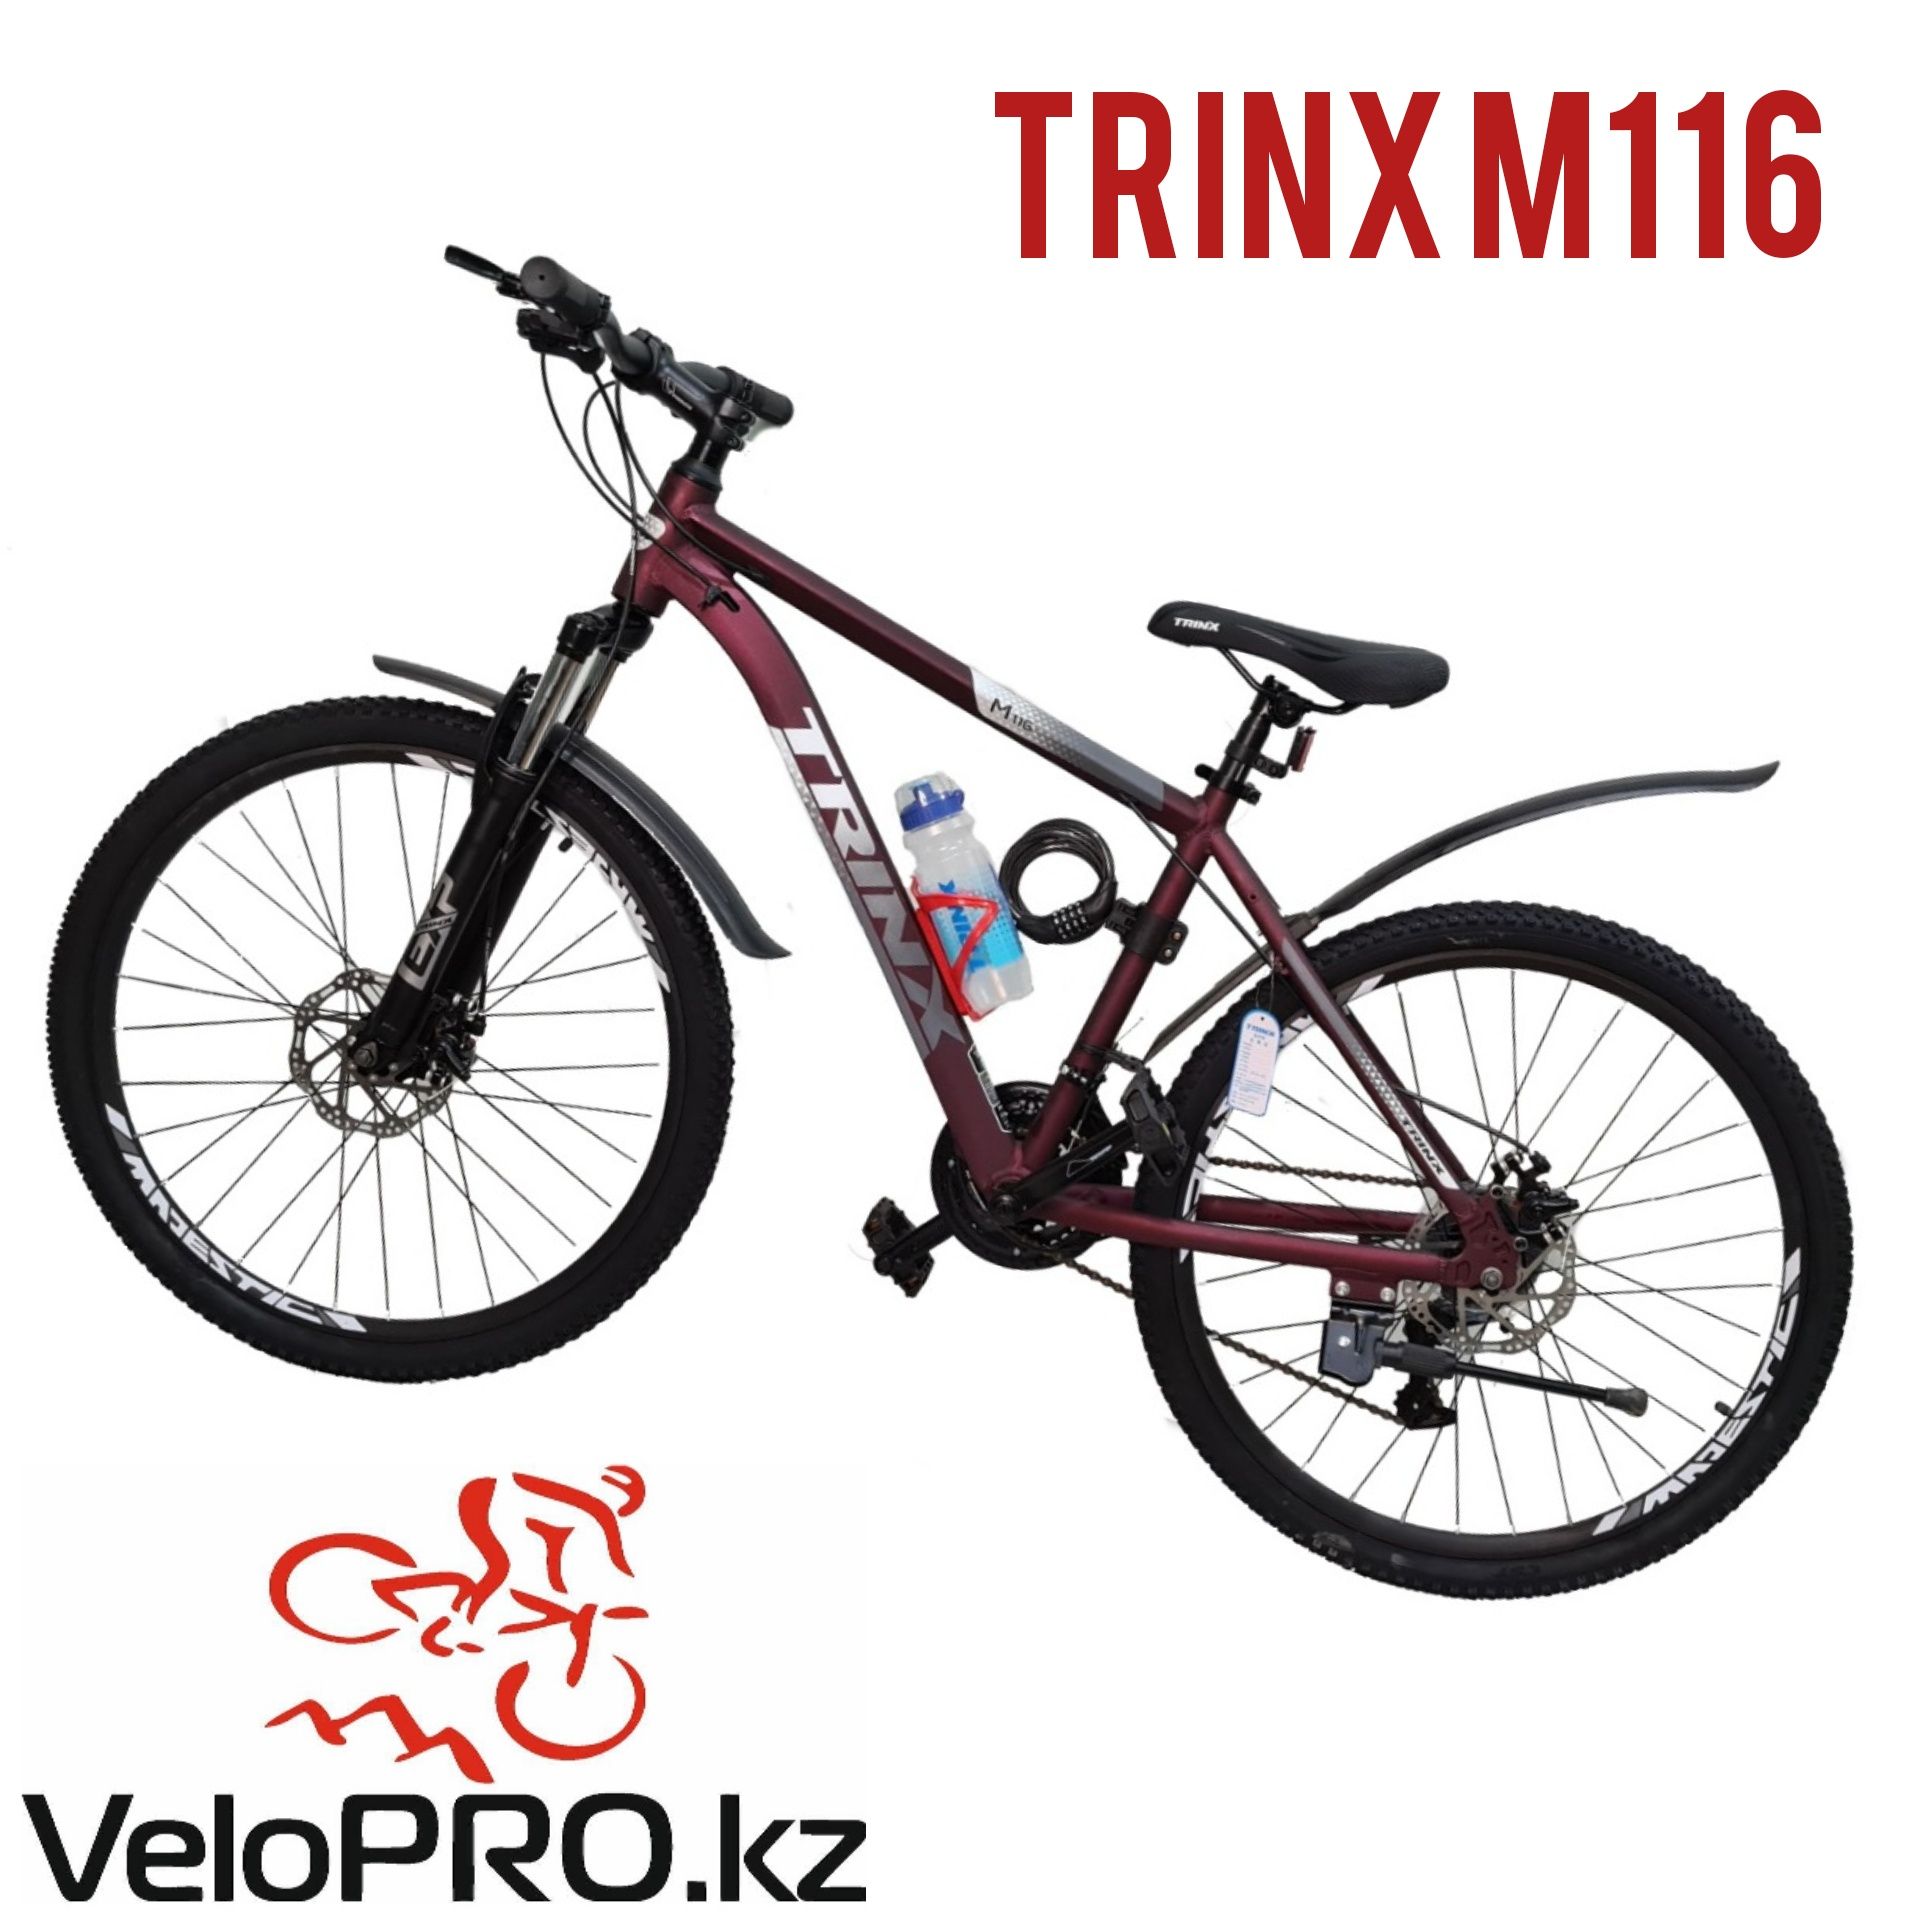 Велосипед Trinx junior, Tempo,m258,m139,m500. Рассрочка. Гарантия.